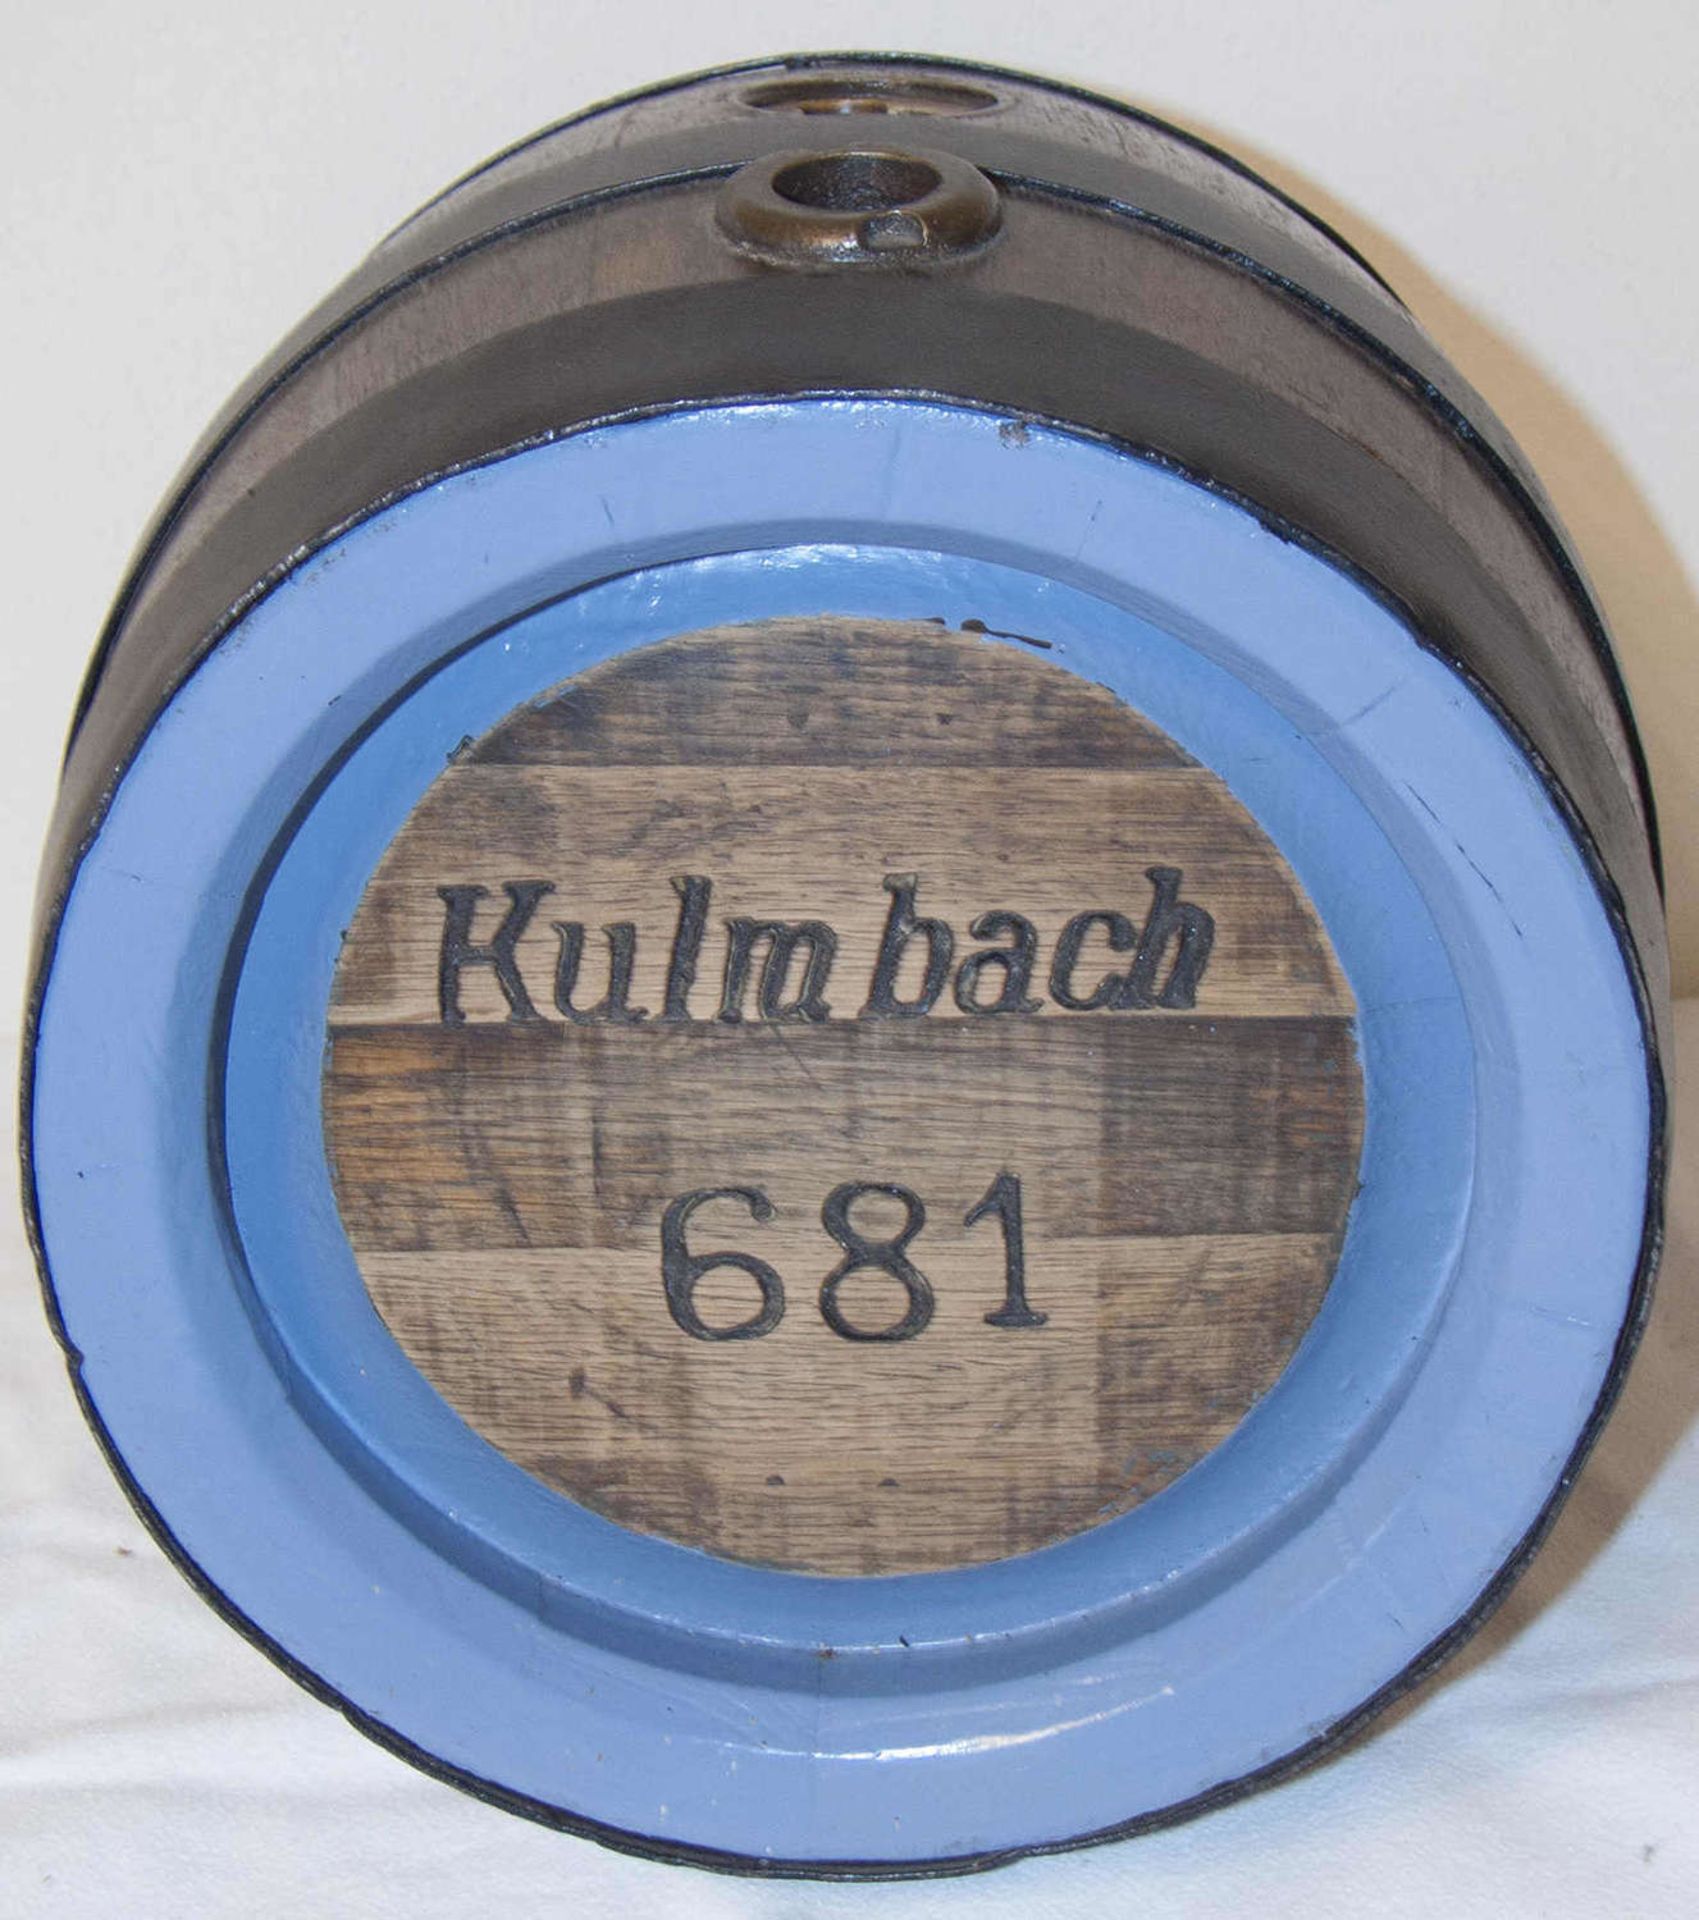 Kulmbach / Reicheslbräu, Bierfass. H: ca. 33 cm. Sehr guter Zustand.Kulmbach / Reicheslbräu, beer